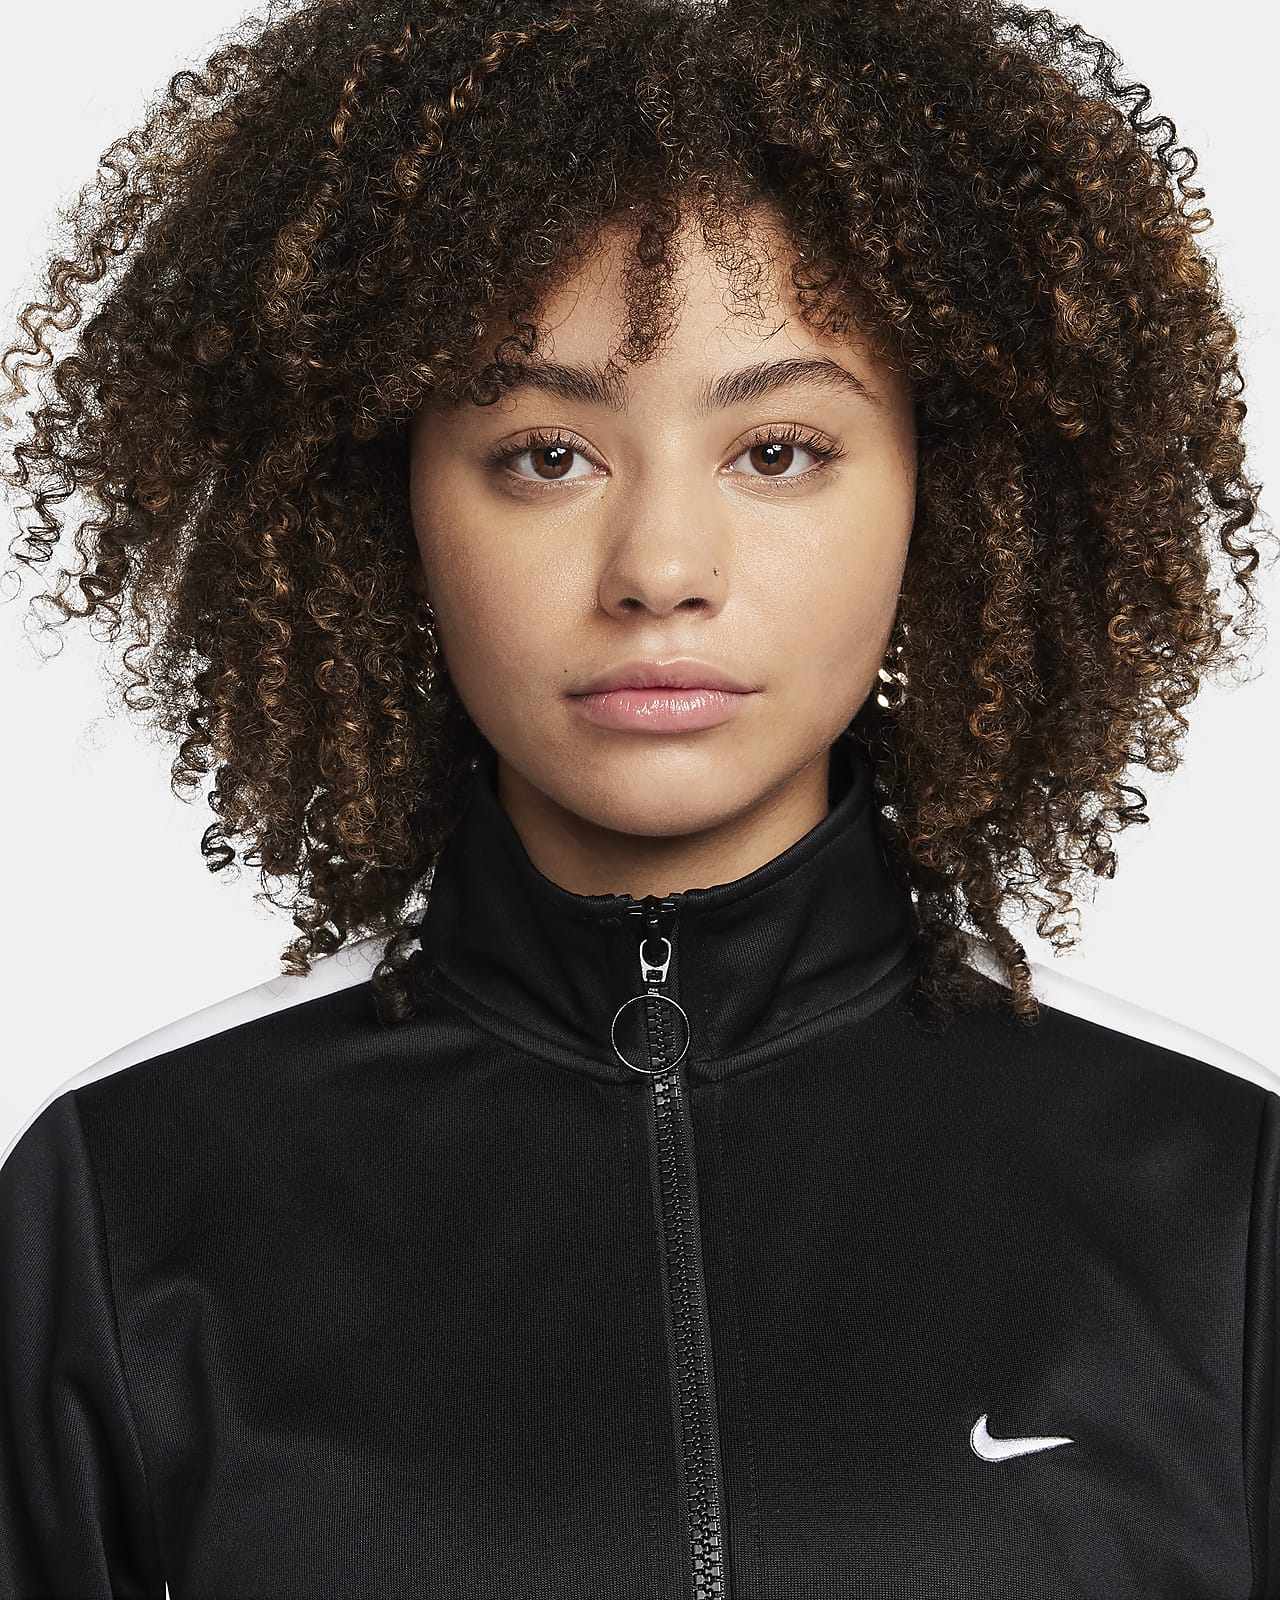 Nike Sportswear Women's Jacket. Nike CA